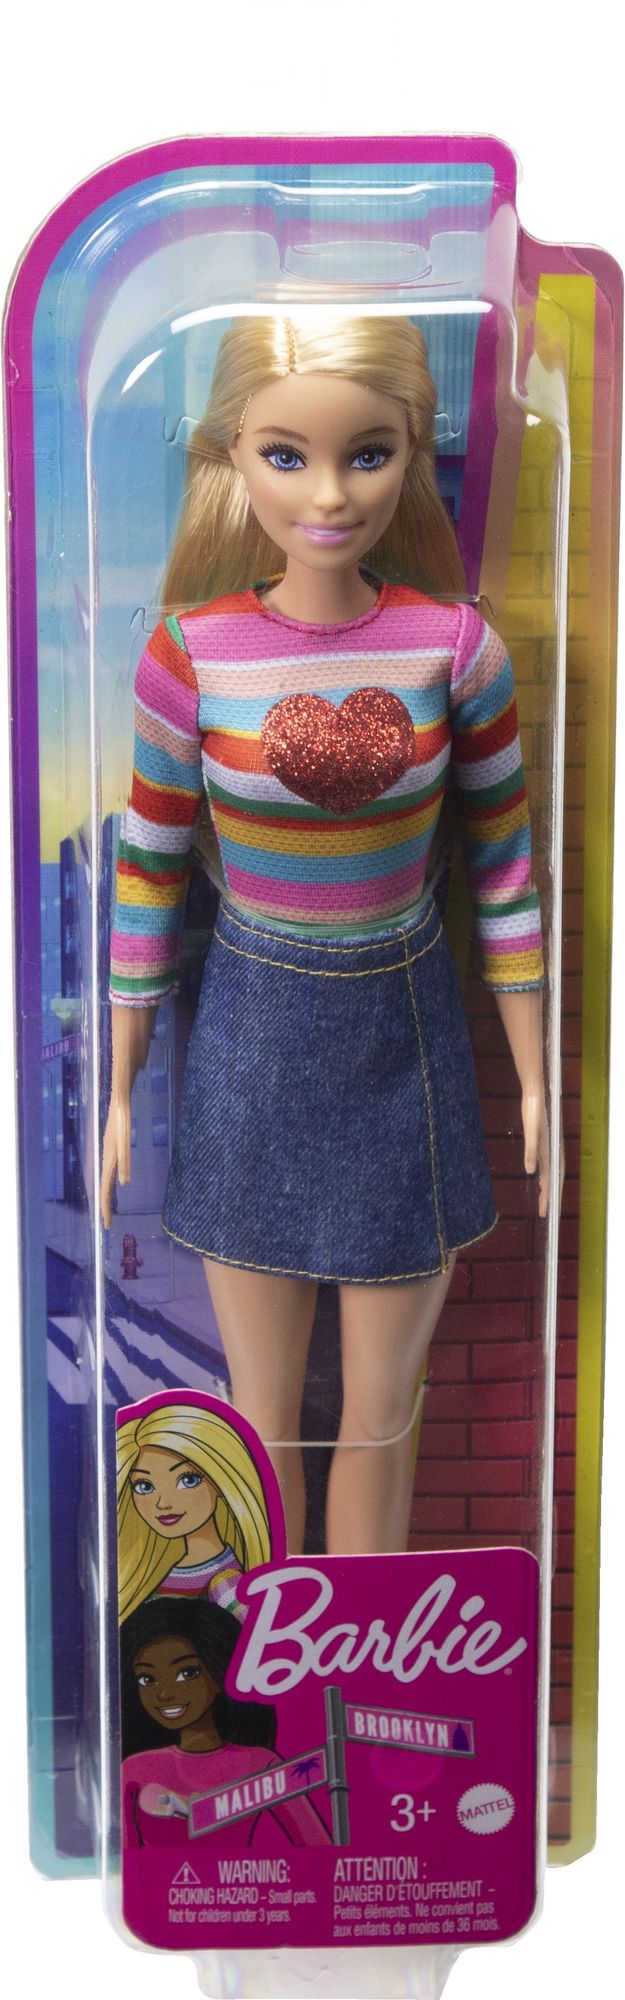 Barbie - Barbie Malibu Puppe' kaufen - Spielwaren